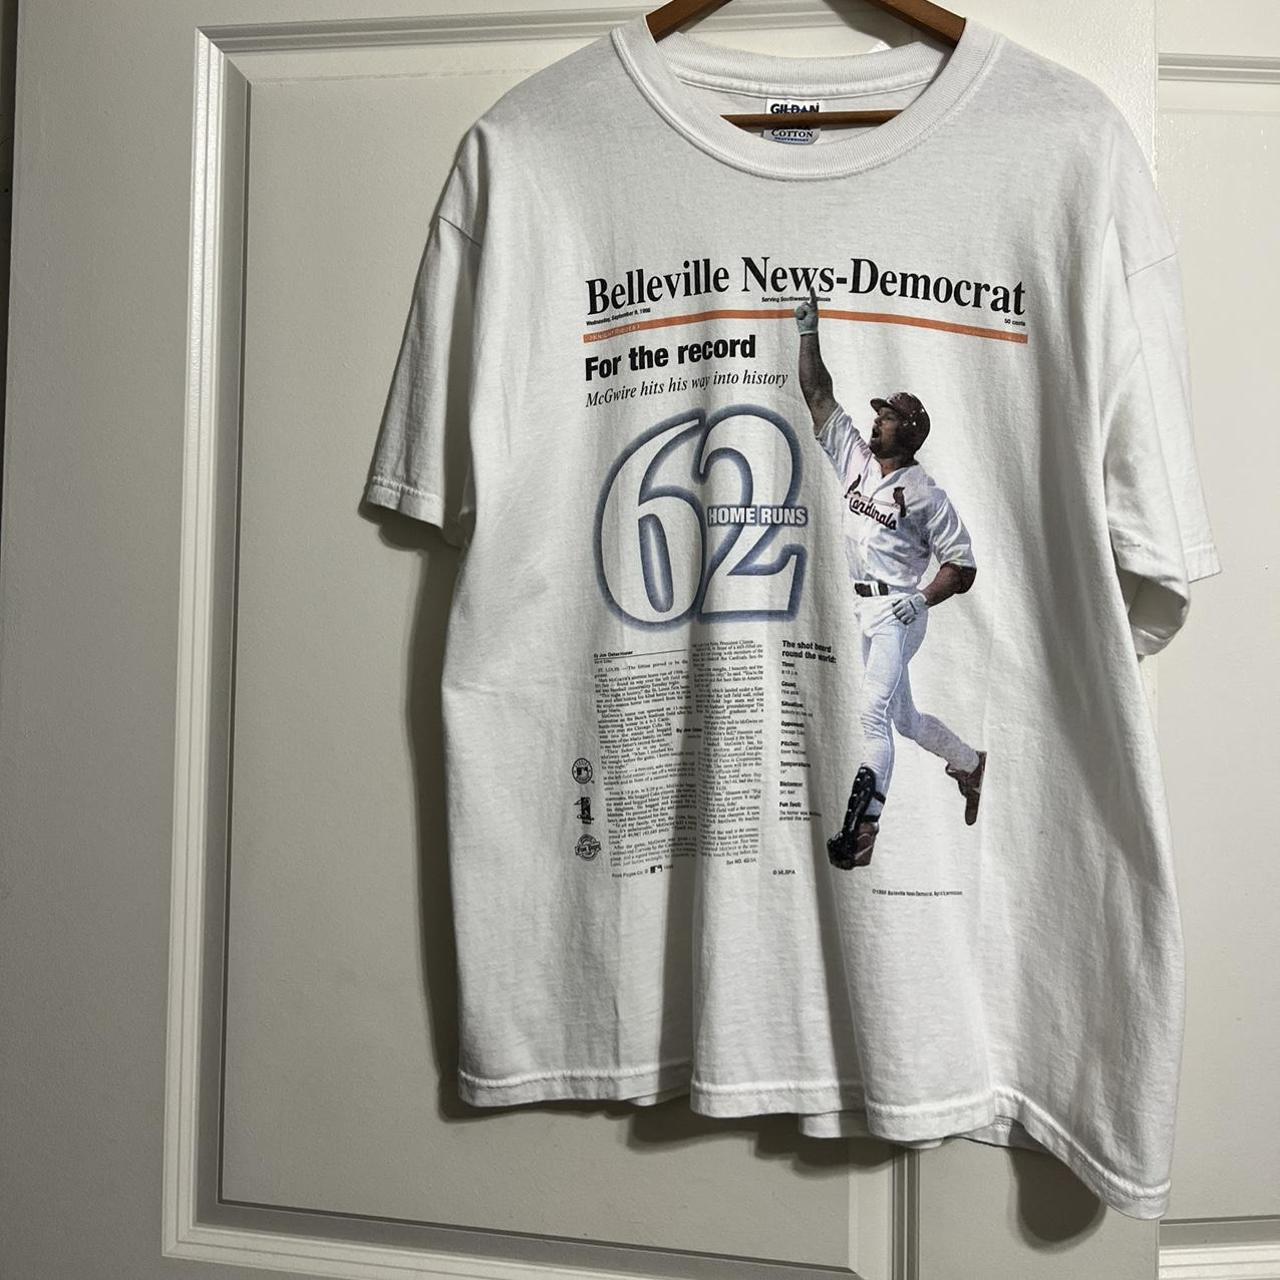 MLB Men's T-Shirt - White - XL